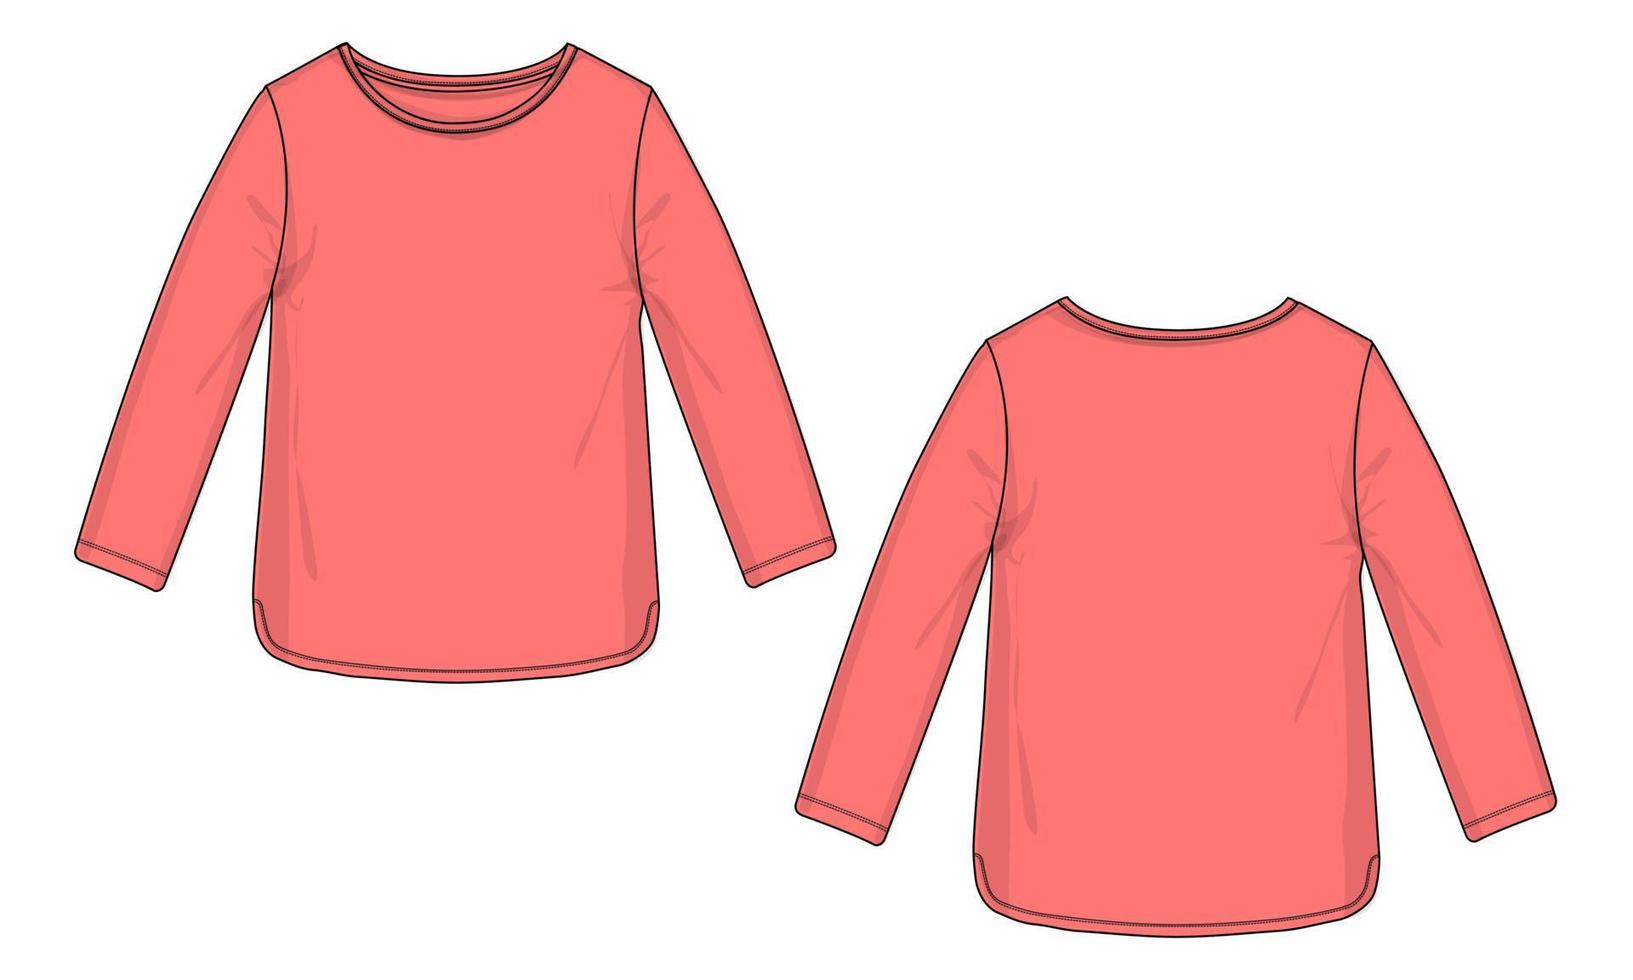 manga longa gola redonda t camisa vestido design ilustração vetorial modelo de cor roxa para senhoras vetor